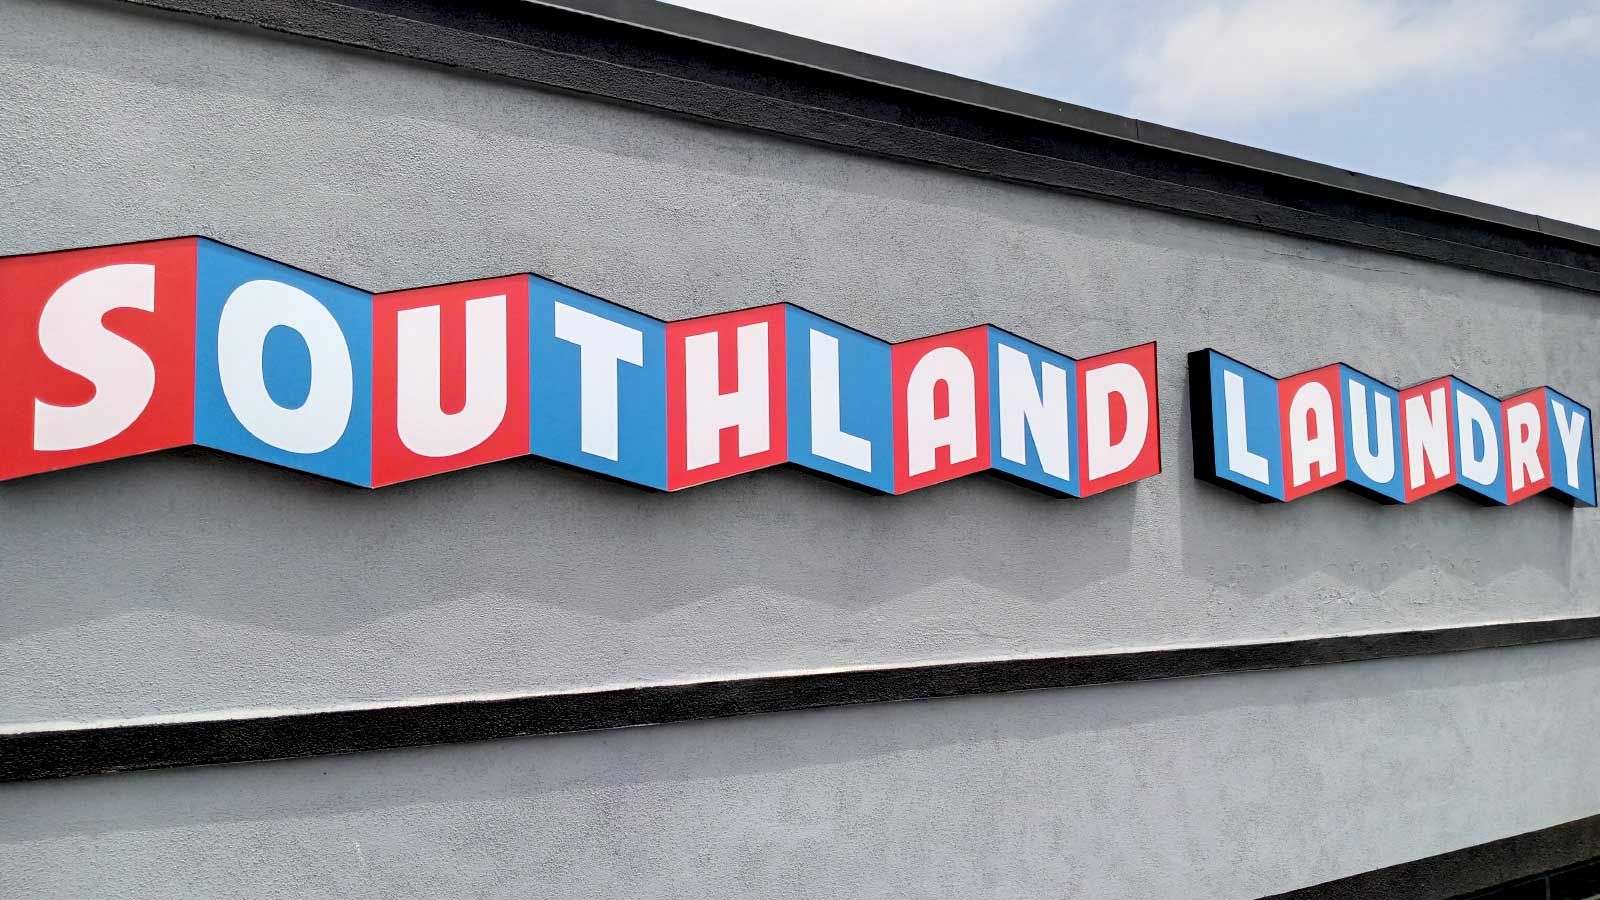 southland laundry building LED signage